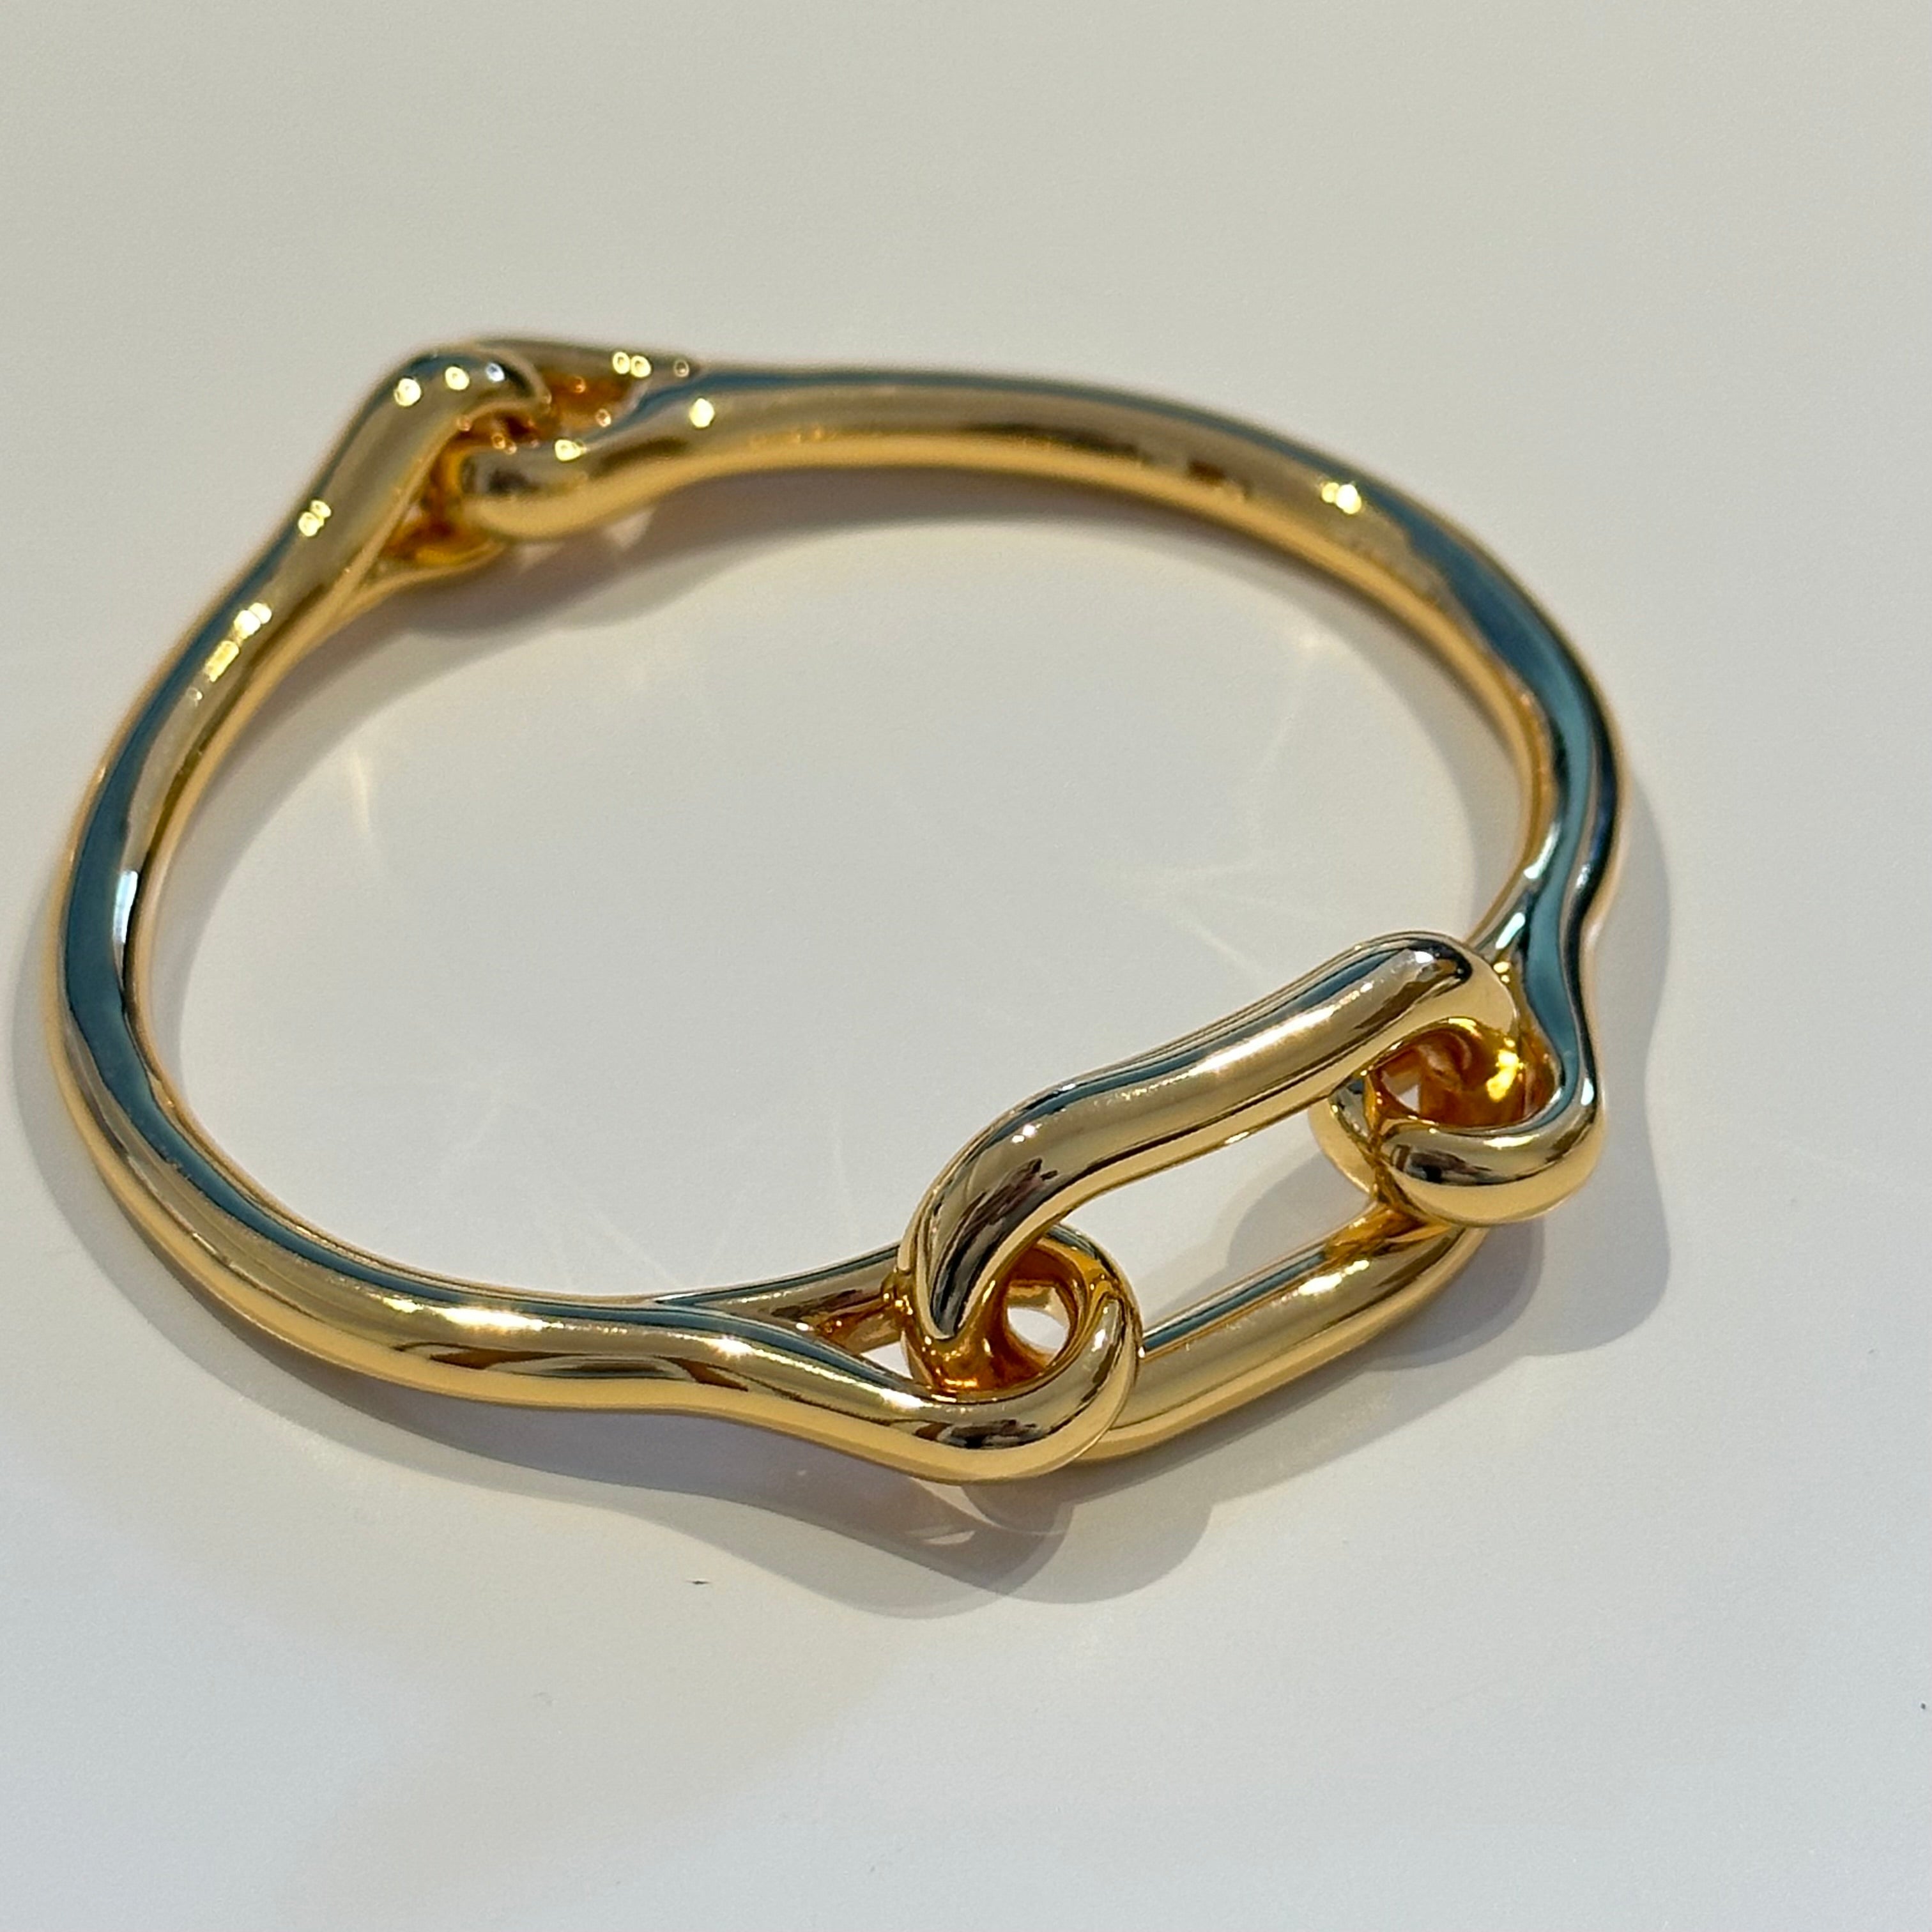 18k Gold Plated Chunky Interlinked Bangle Bracelet - The Anka Bracelet